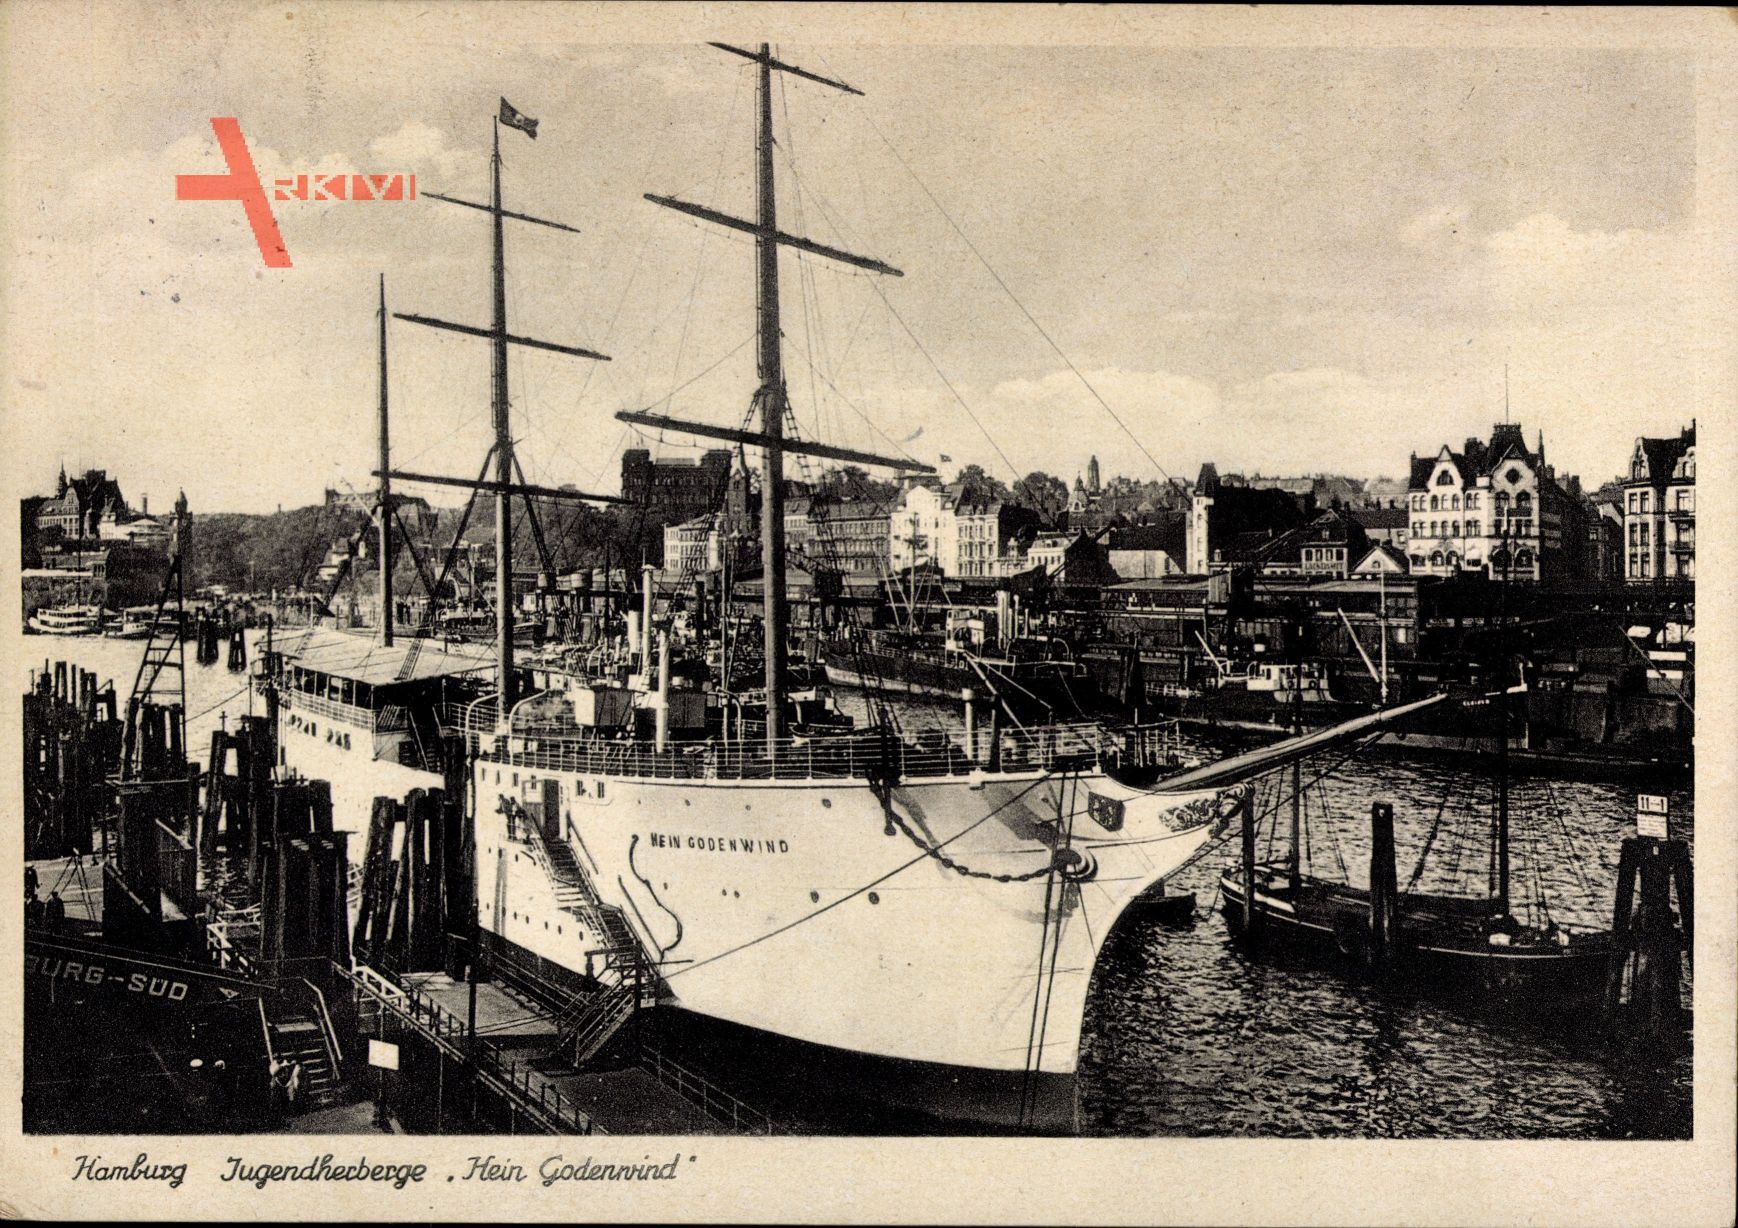 Hamburger Hafen, Schwimmende Jugendherberge Hein Godenwind, Segelschiff